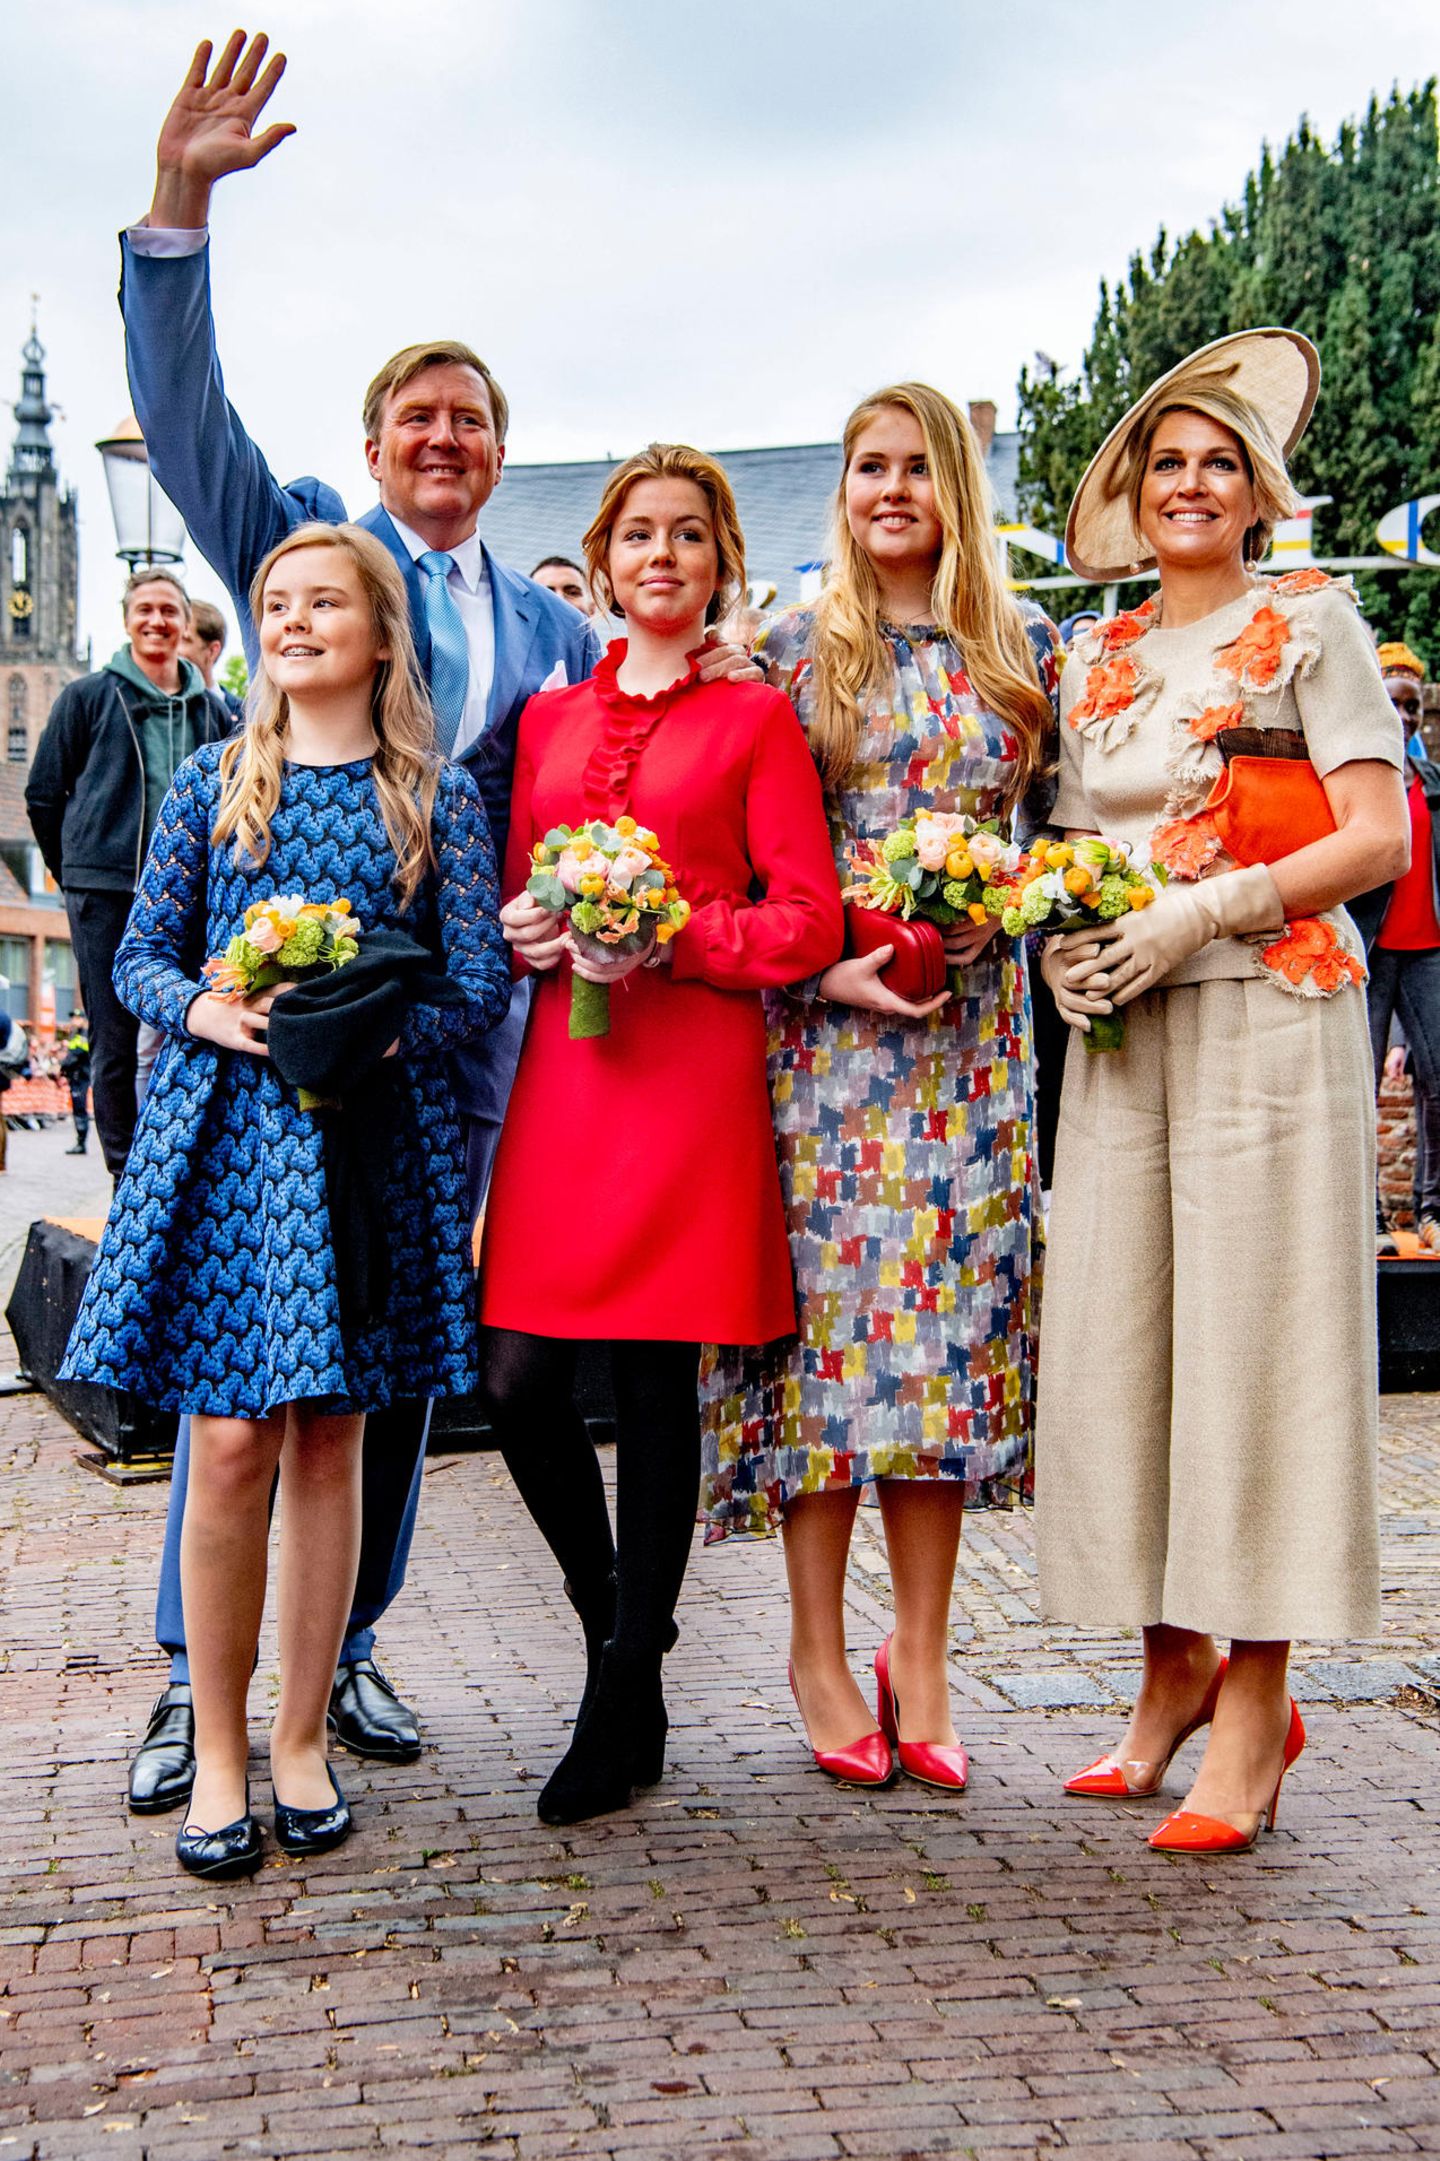 Das war ein schönes Fest. Ein gelungener Königstag 2019 neigt sich dem Ende und König Willem-Alexander und seine Familie posieren erneut für ein Gruppenfoto und winken fröhlich in die Kameras. 